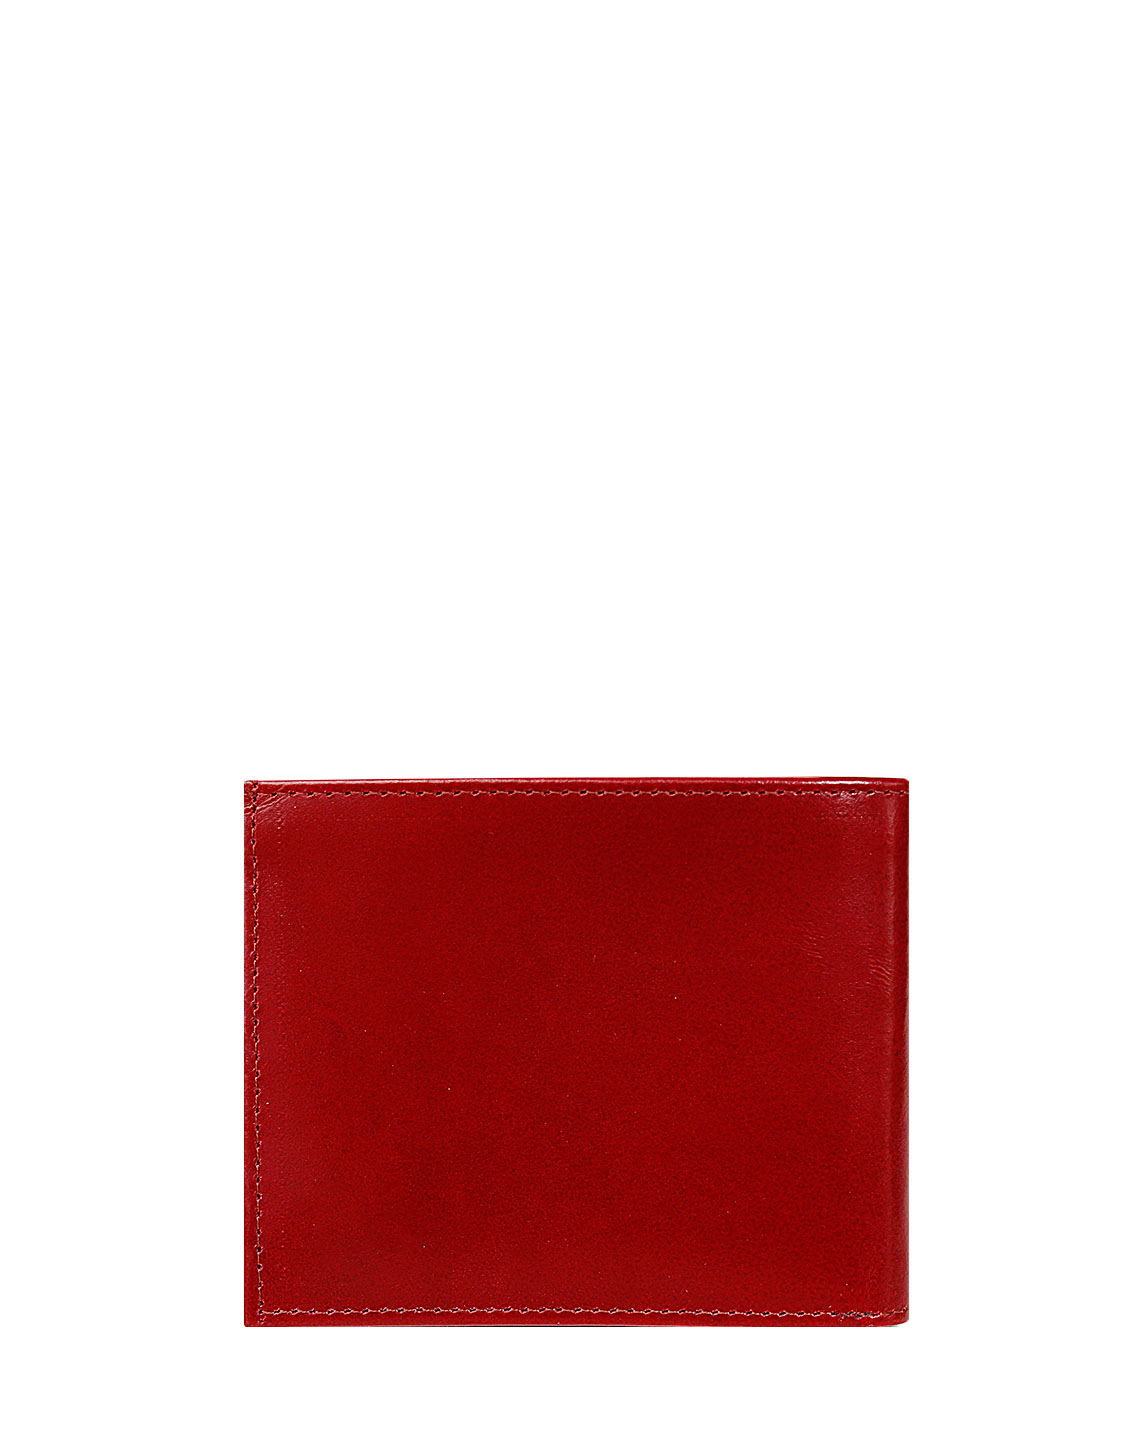 Billetera de Hombre BH-88 Color Rojo